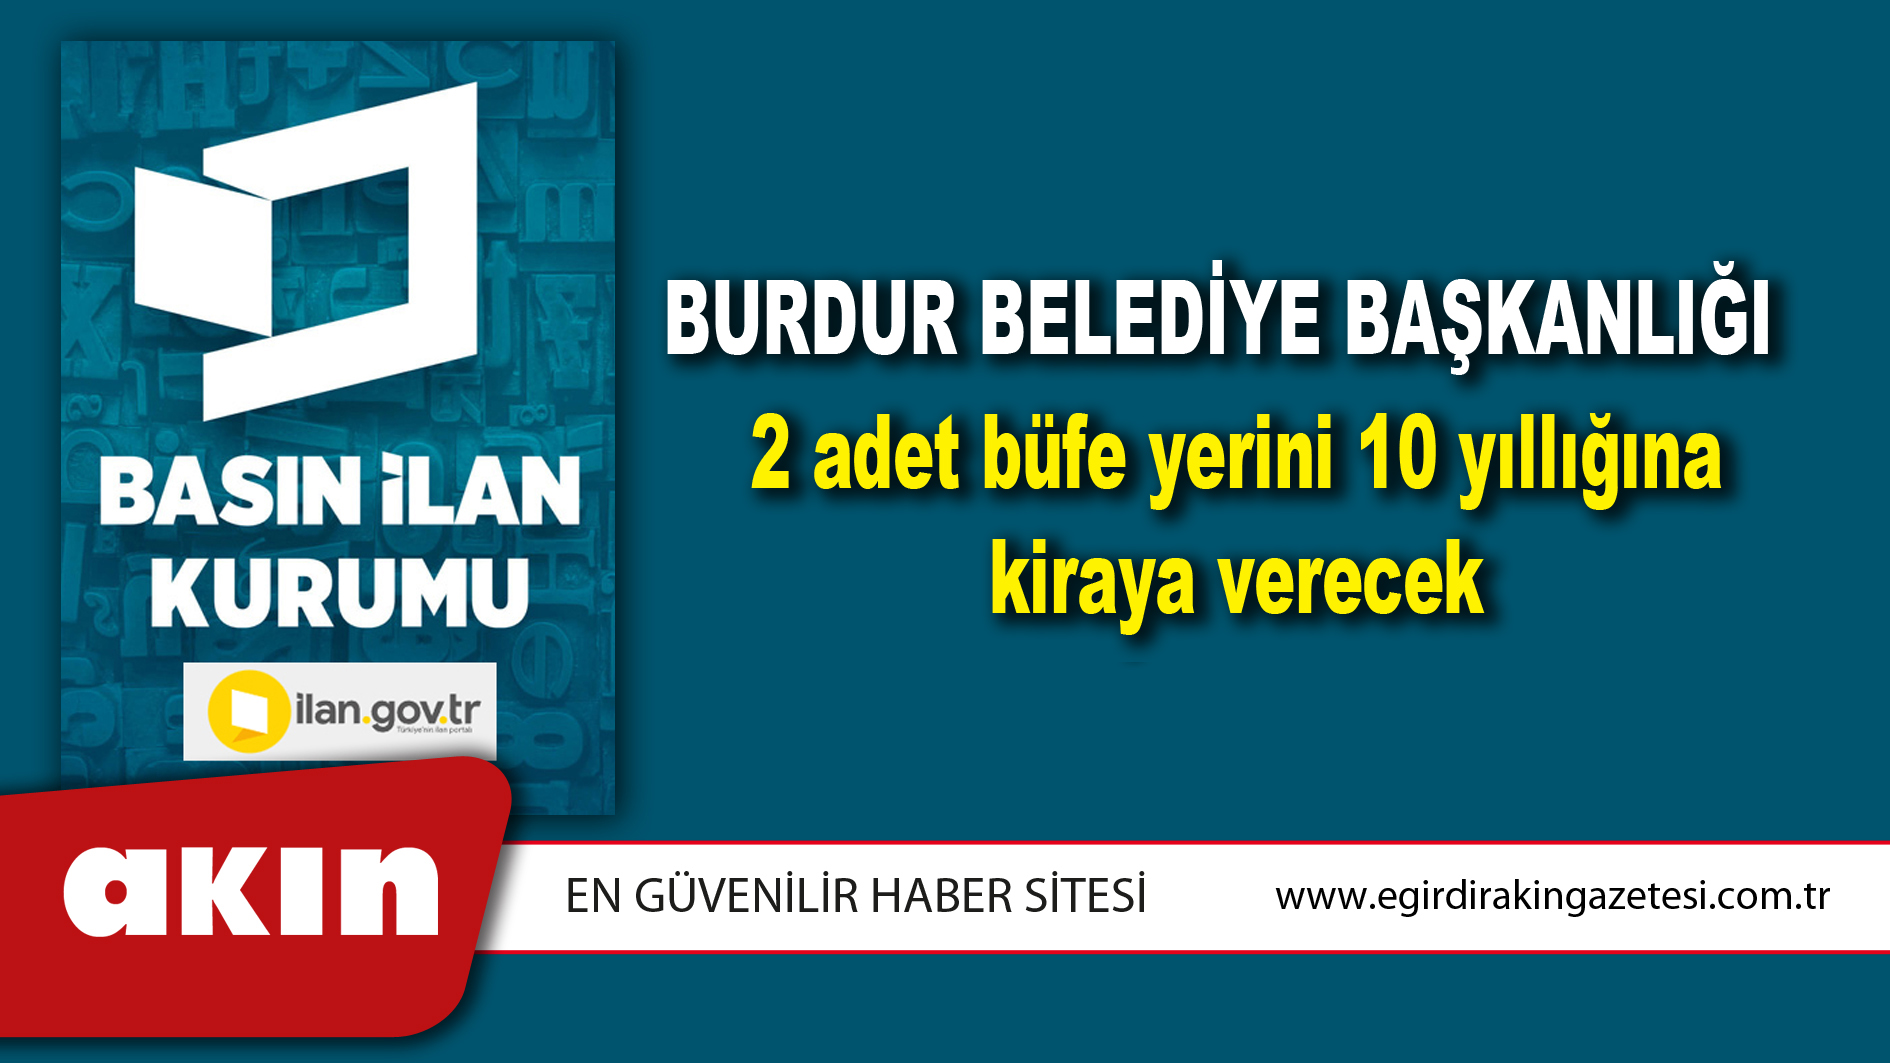 Burdur Belediye Başkanlığı 2 adet büfe yerini 10 yıllığına kiraya verecek